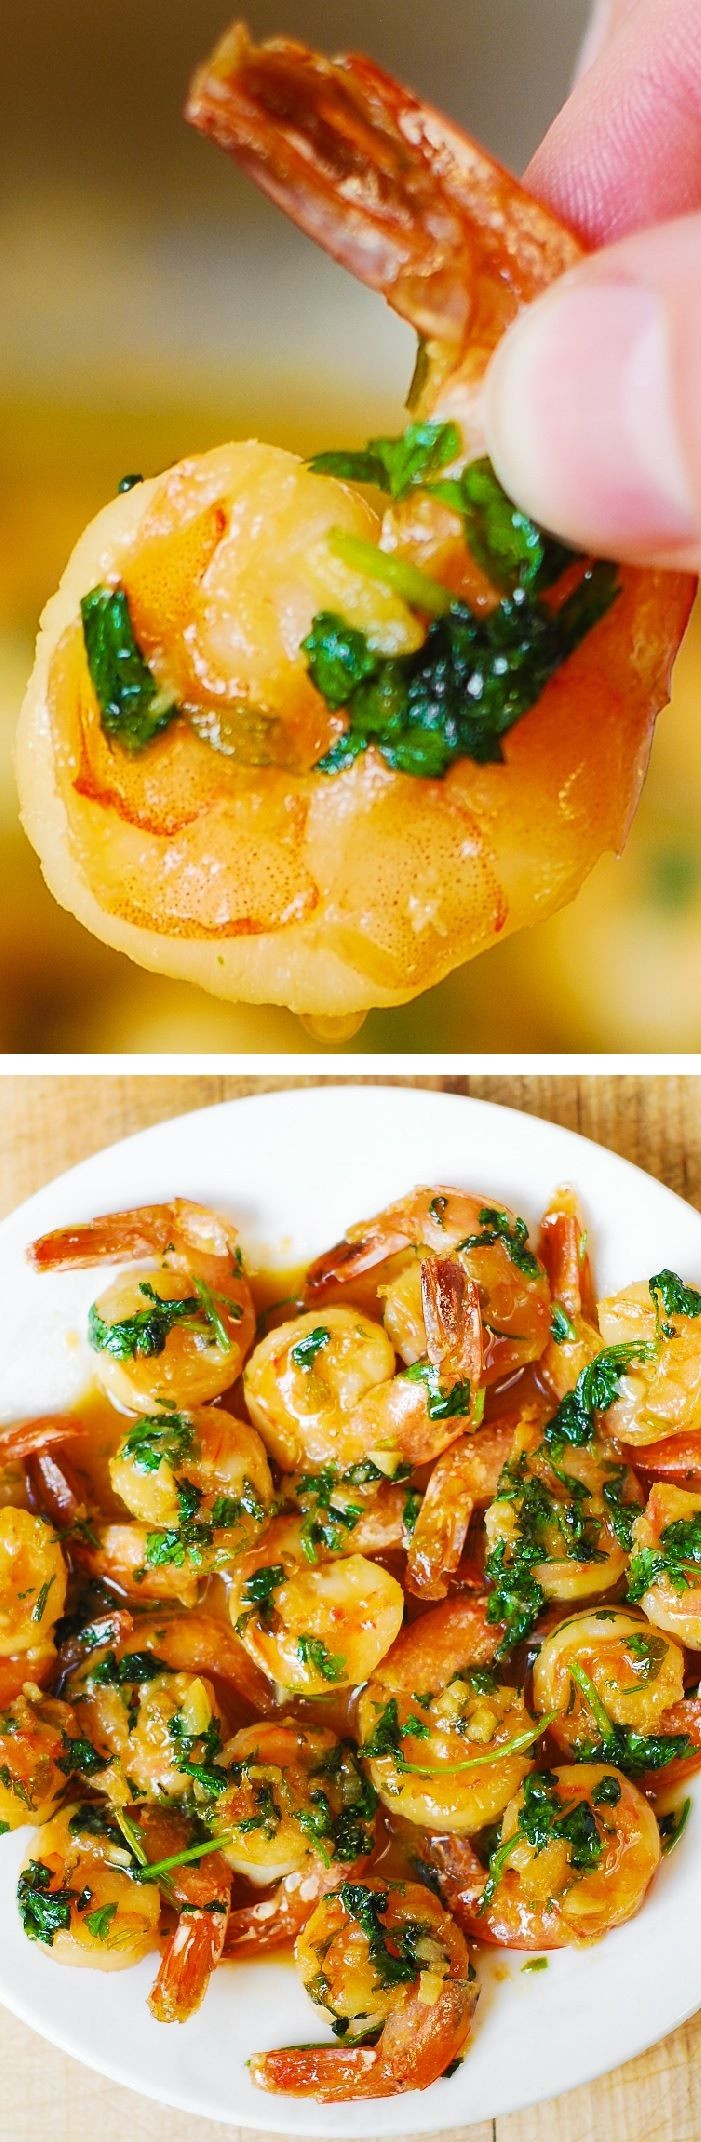 Easy Low Cholesterol Recipes
 Cilantro Lime Honey Garlic Shrimp easy healthy gluten